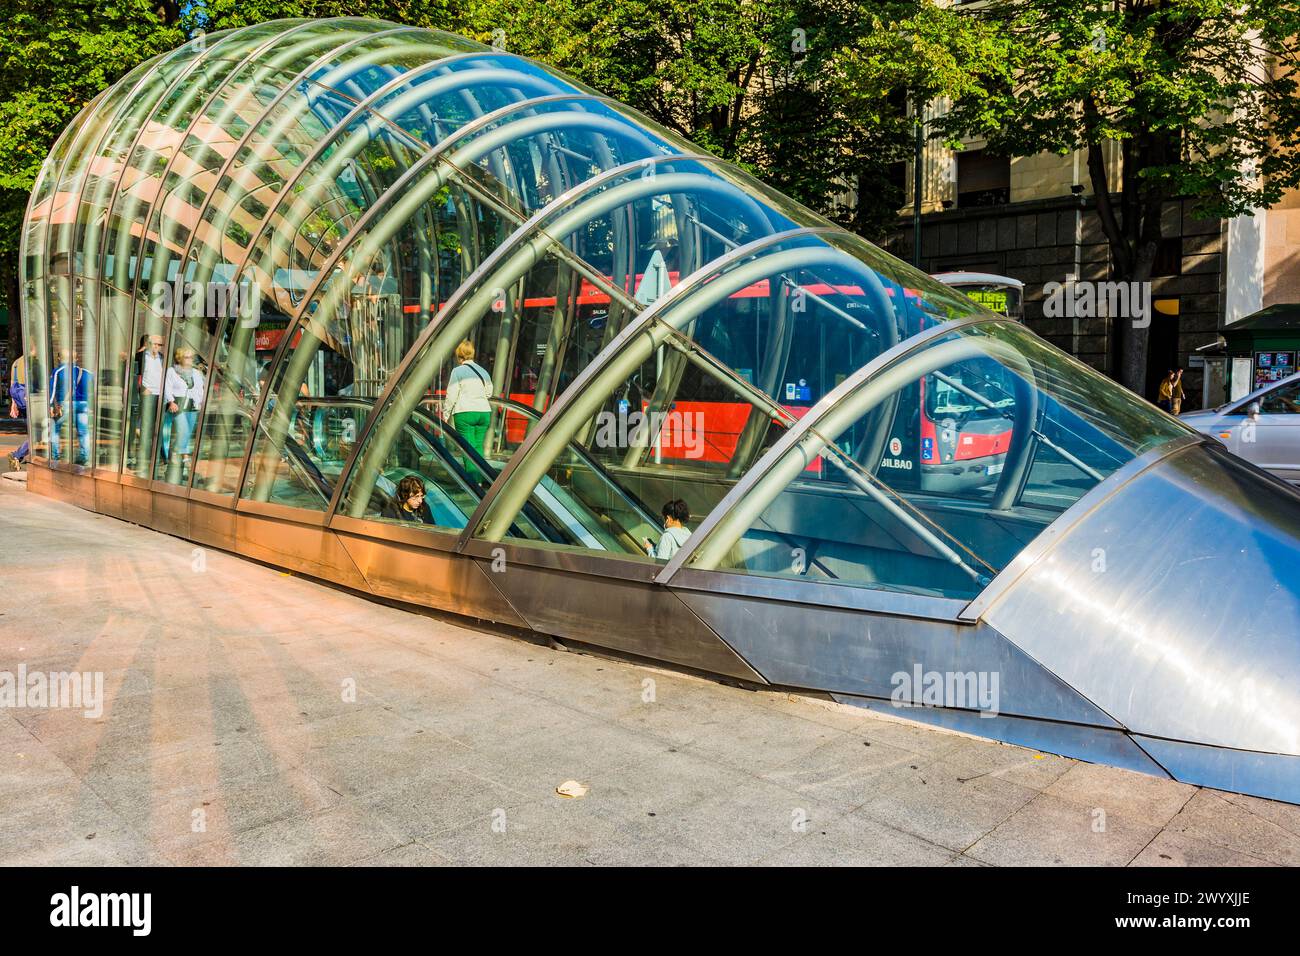 L'accès au métro de Bilbao est assuré par des « fosteritos », des structures en verre affectueusement nommées d'après l'architecte qui les a conçues, Norman Foster. Bi Banque D'Images